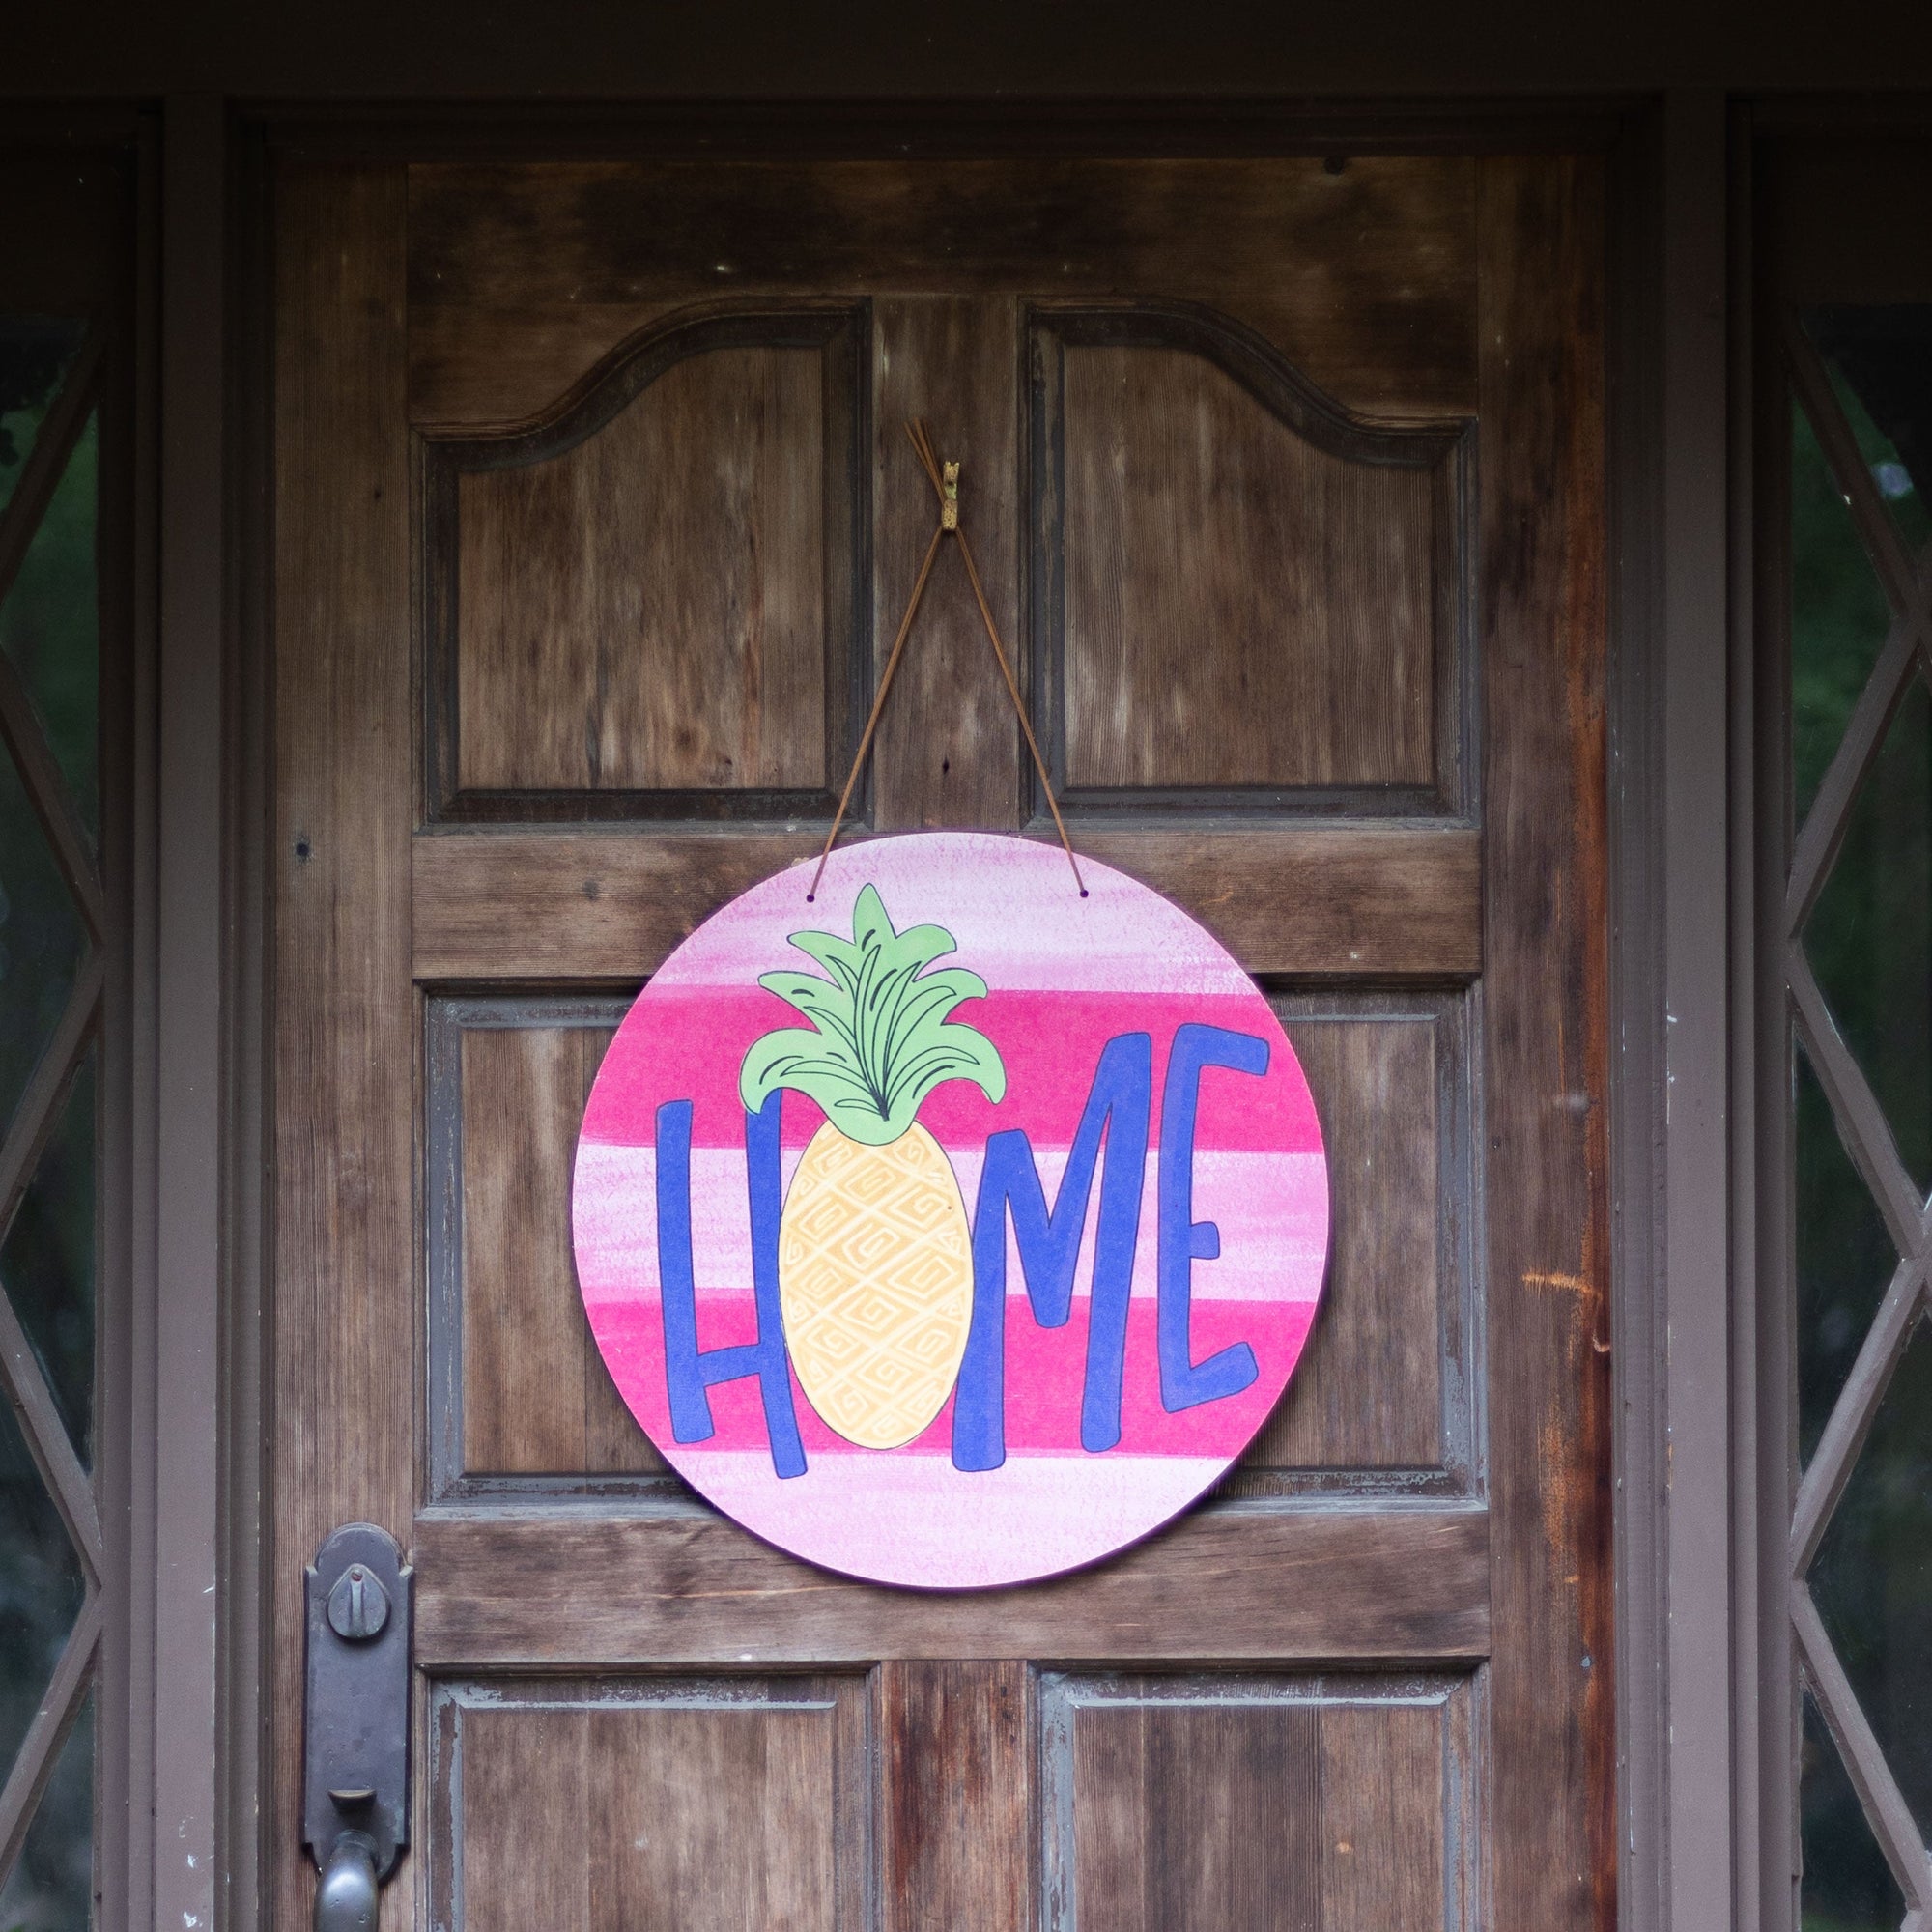 Front View. Summer Door Hanger, Home Pineapple Outdoor Ornament/Decor The WAREHOUSE Studio 